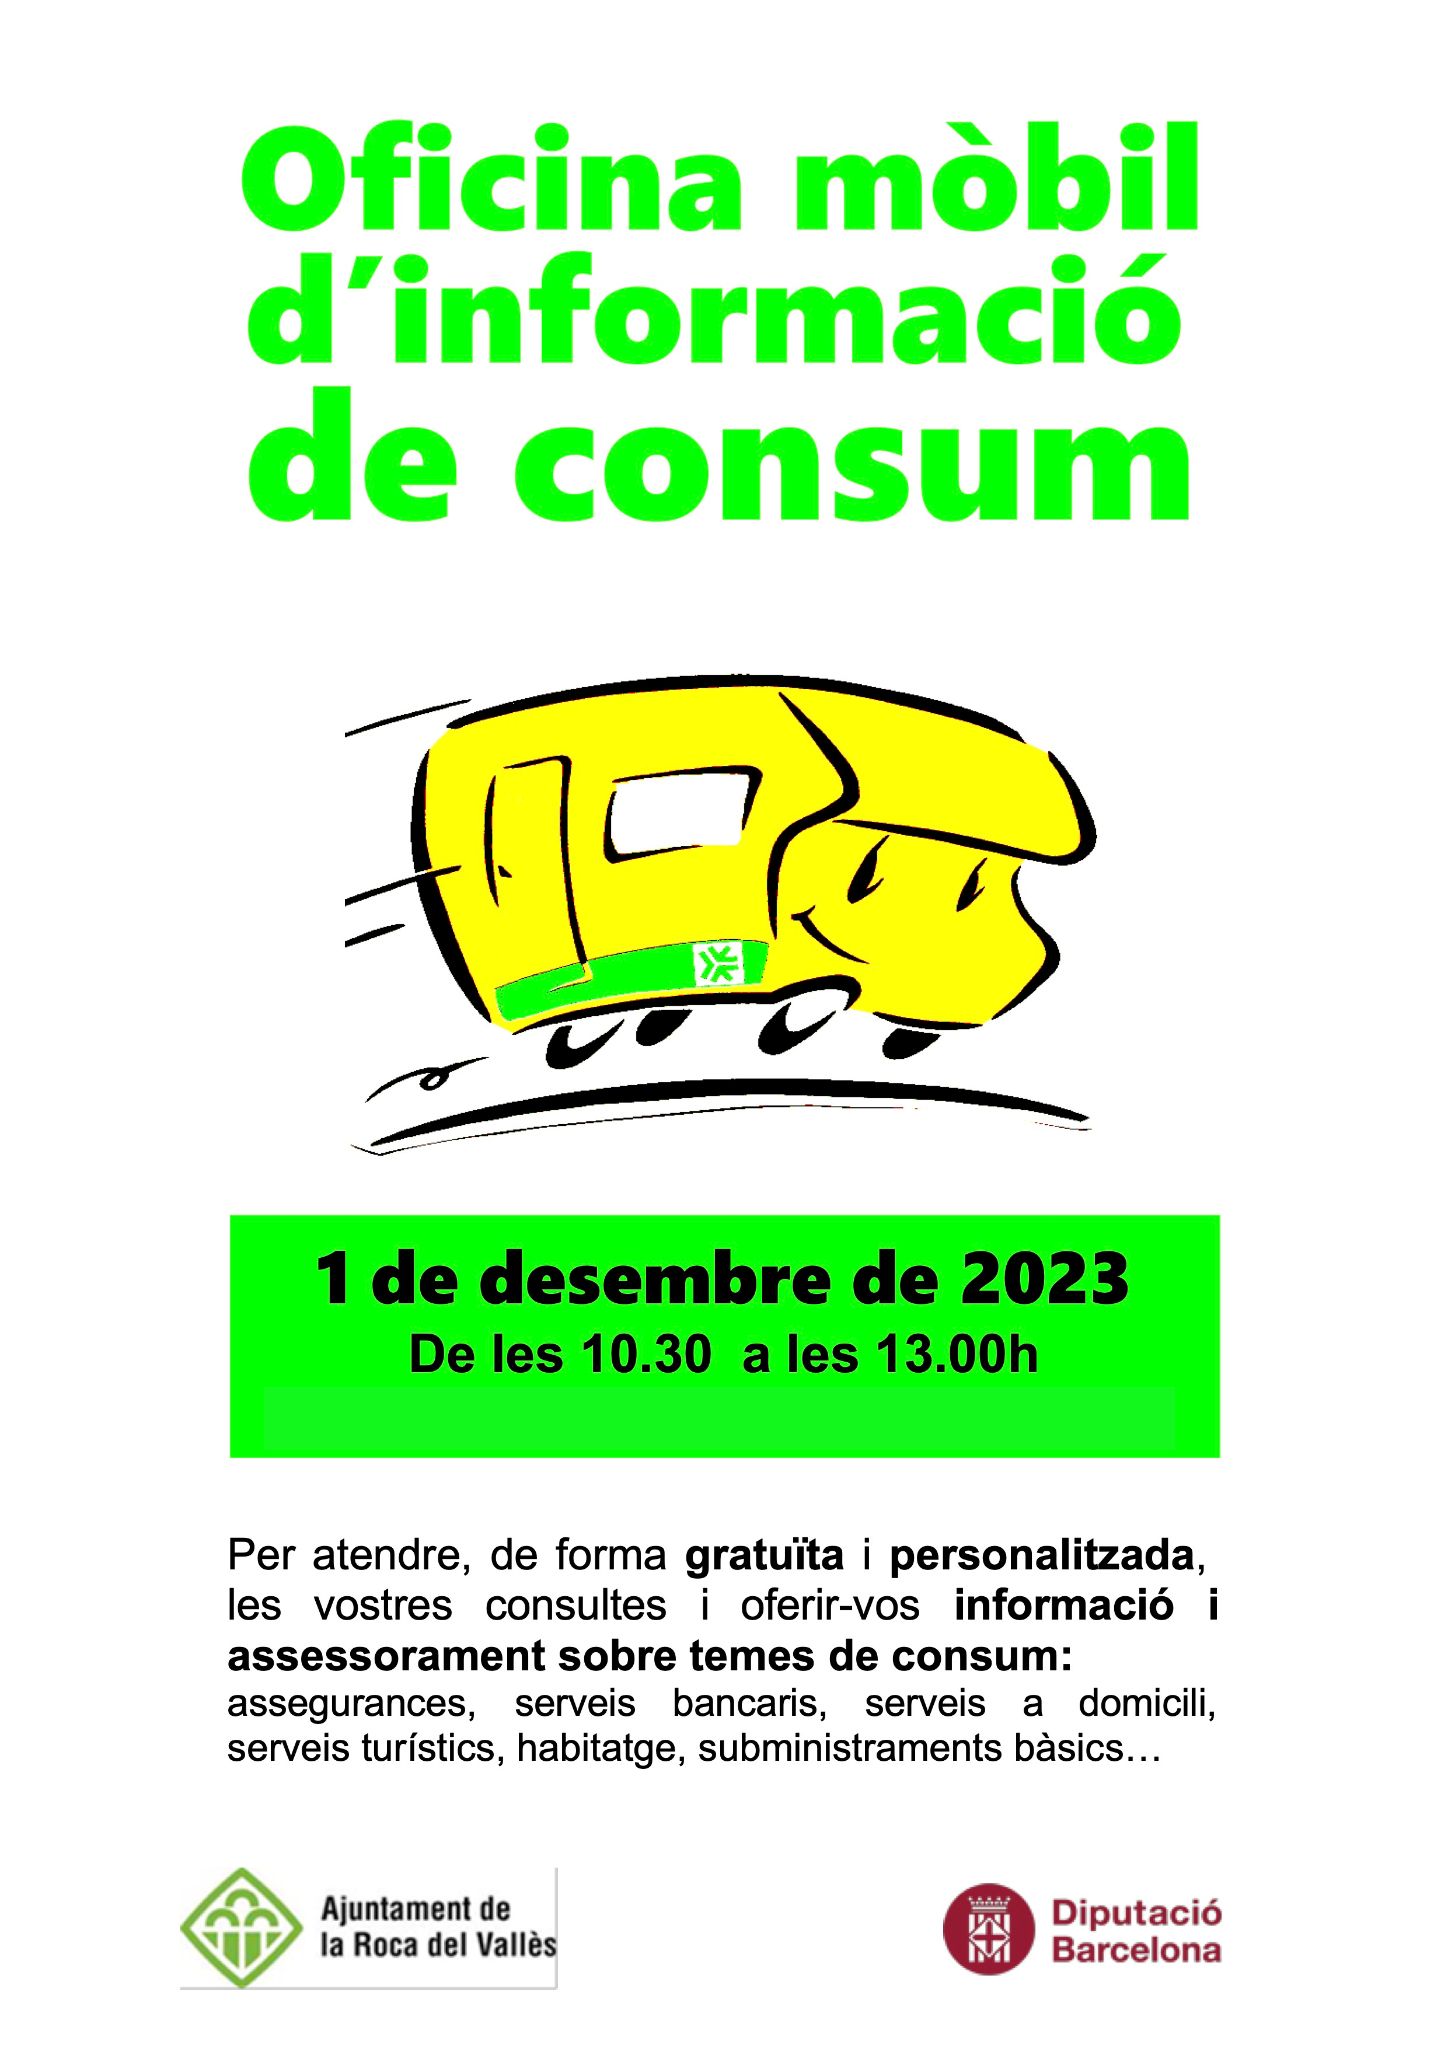 La pròxima visita de l'Oficina Mòbil d'Informació de Consum serà a l'Ajuntament